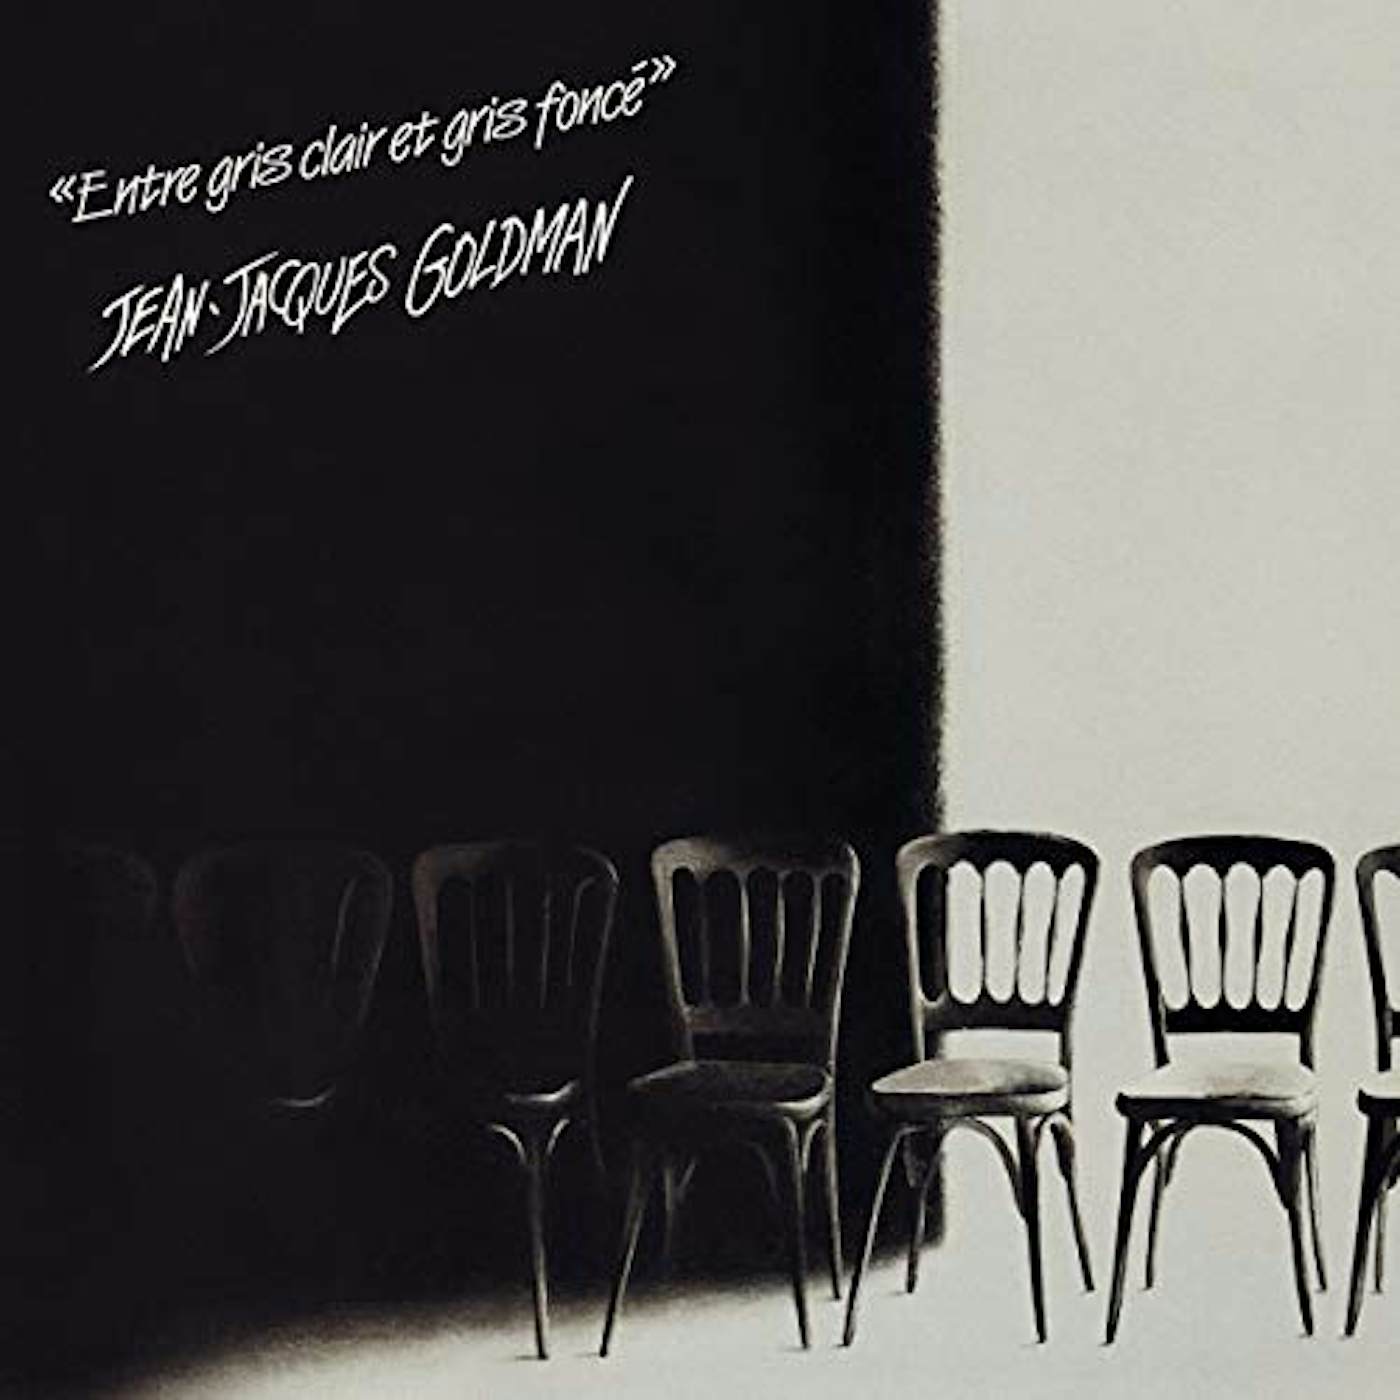 Jean-Jacques Goldman ENTRE GRIS CLAIR ET GRIS FONCE Vinyl Record